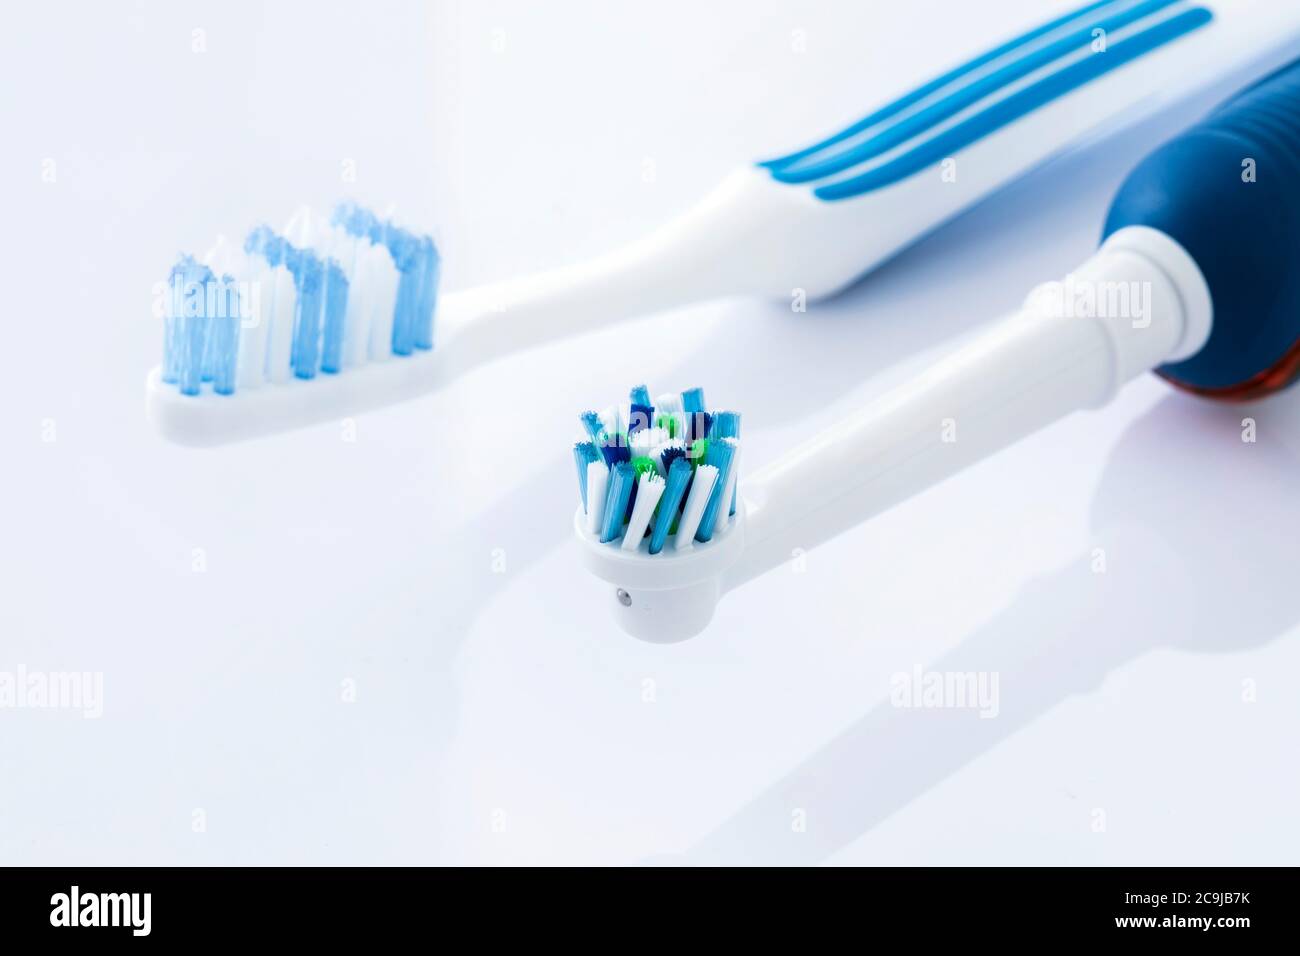 Cepillos dentales eléctricos y manuales sobre fondo blanco. Foto de stock